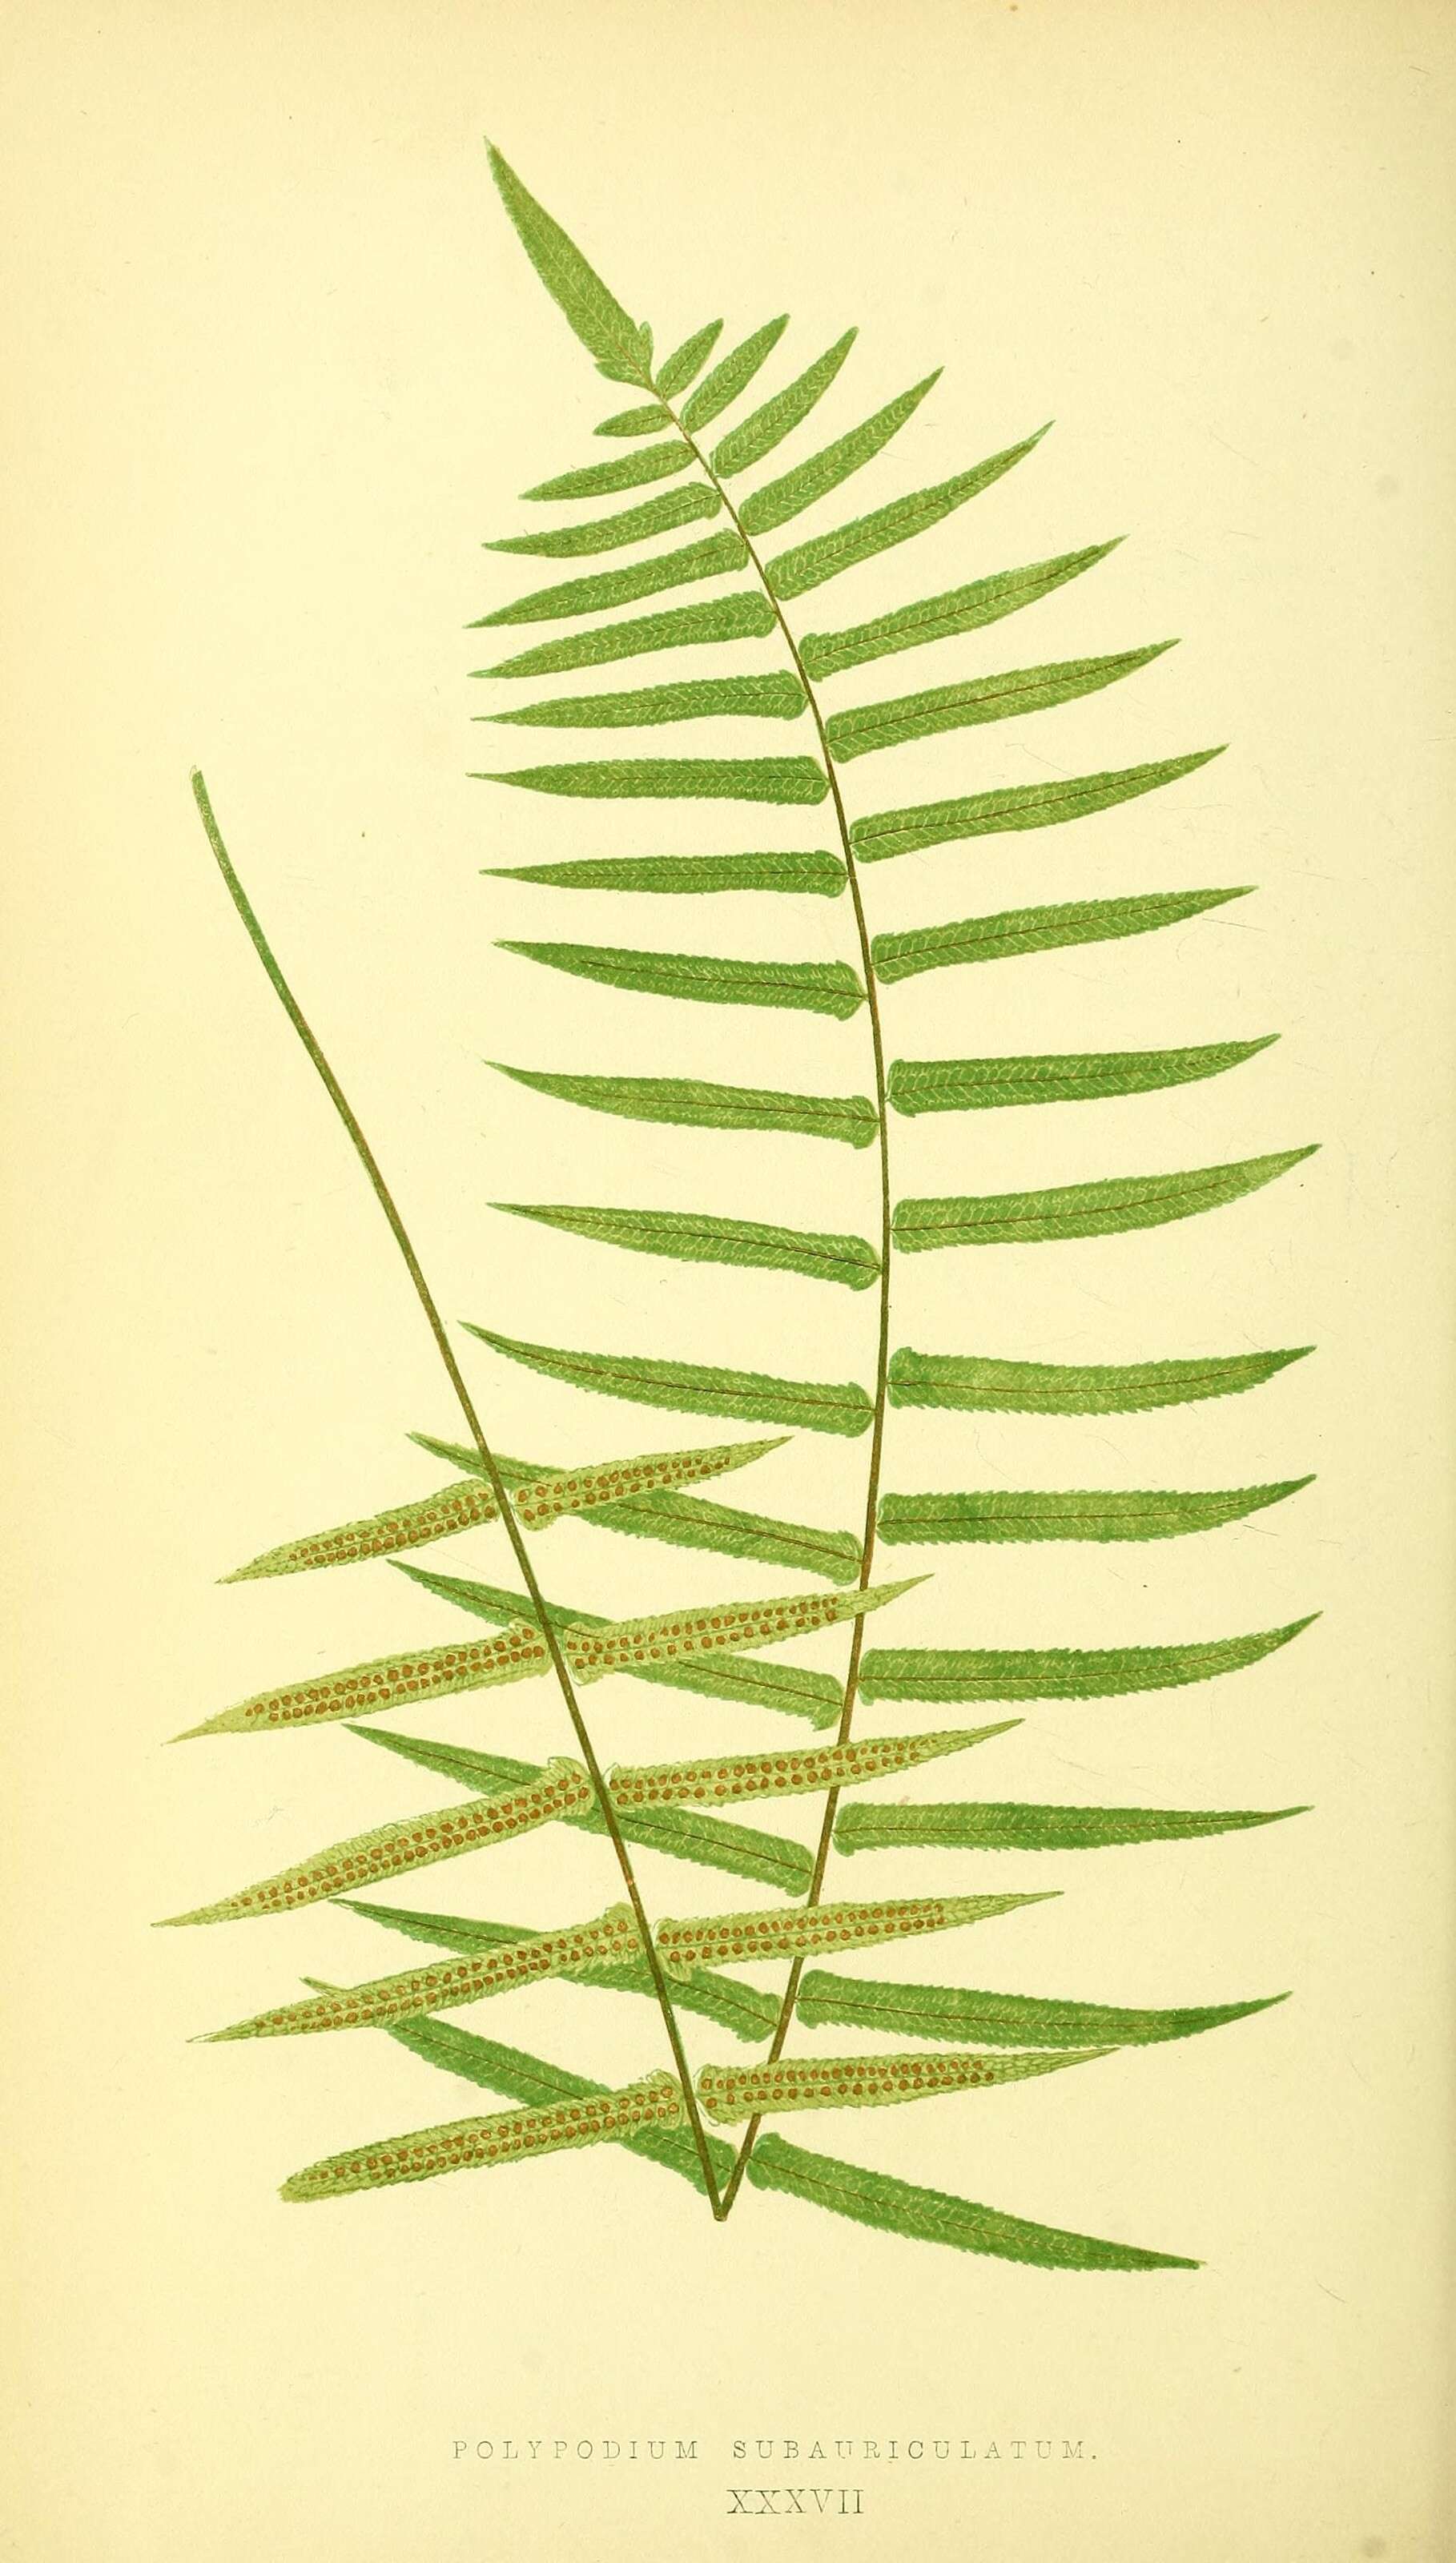 Image of Goniophlebium subauriculatum (Bl.) C. Presl